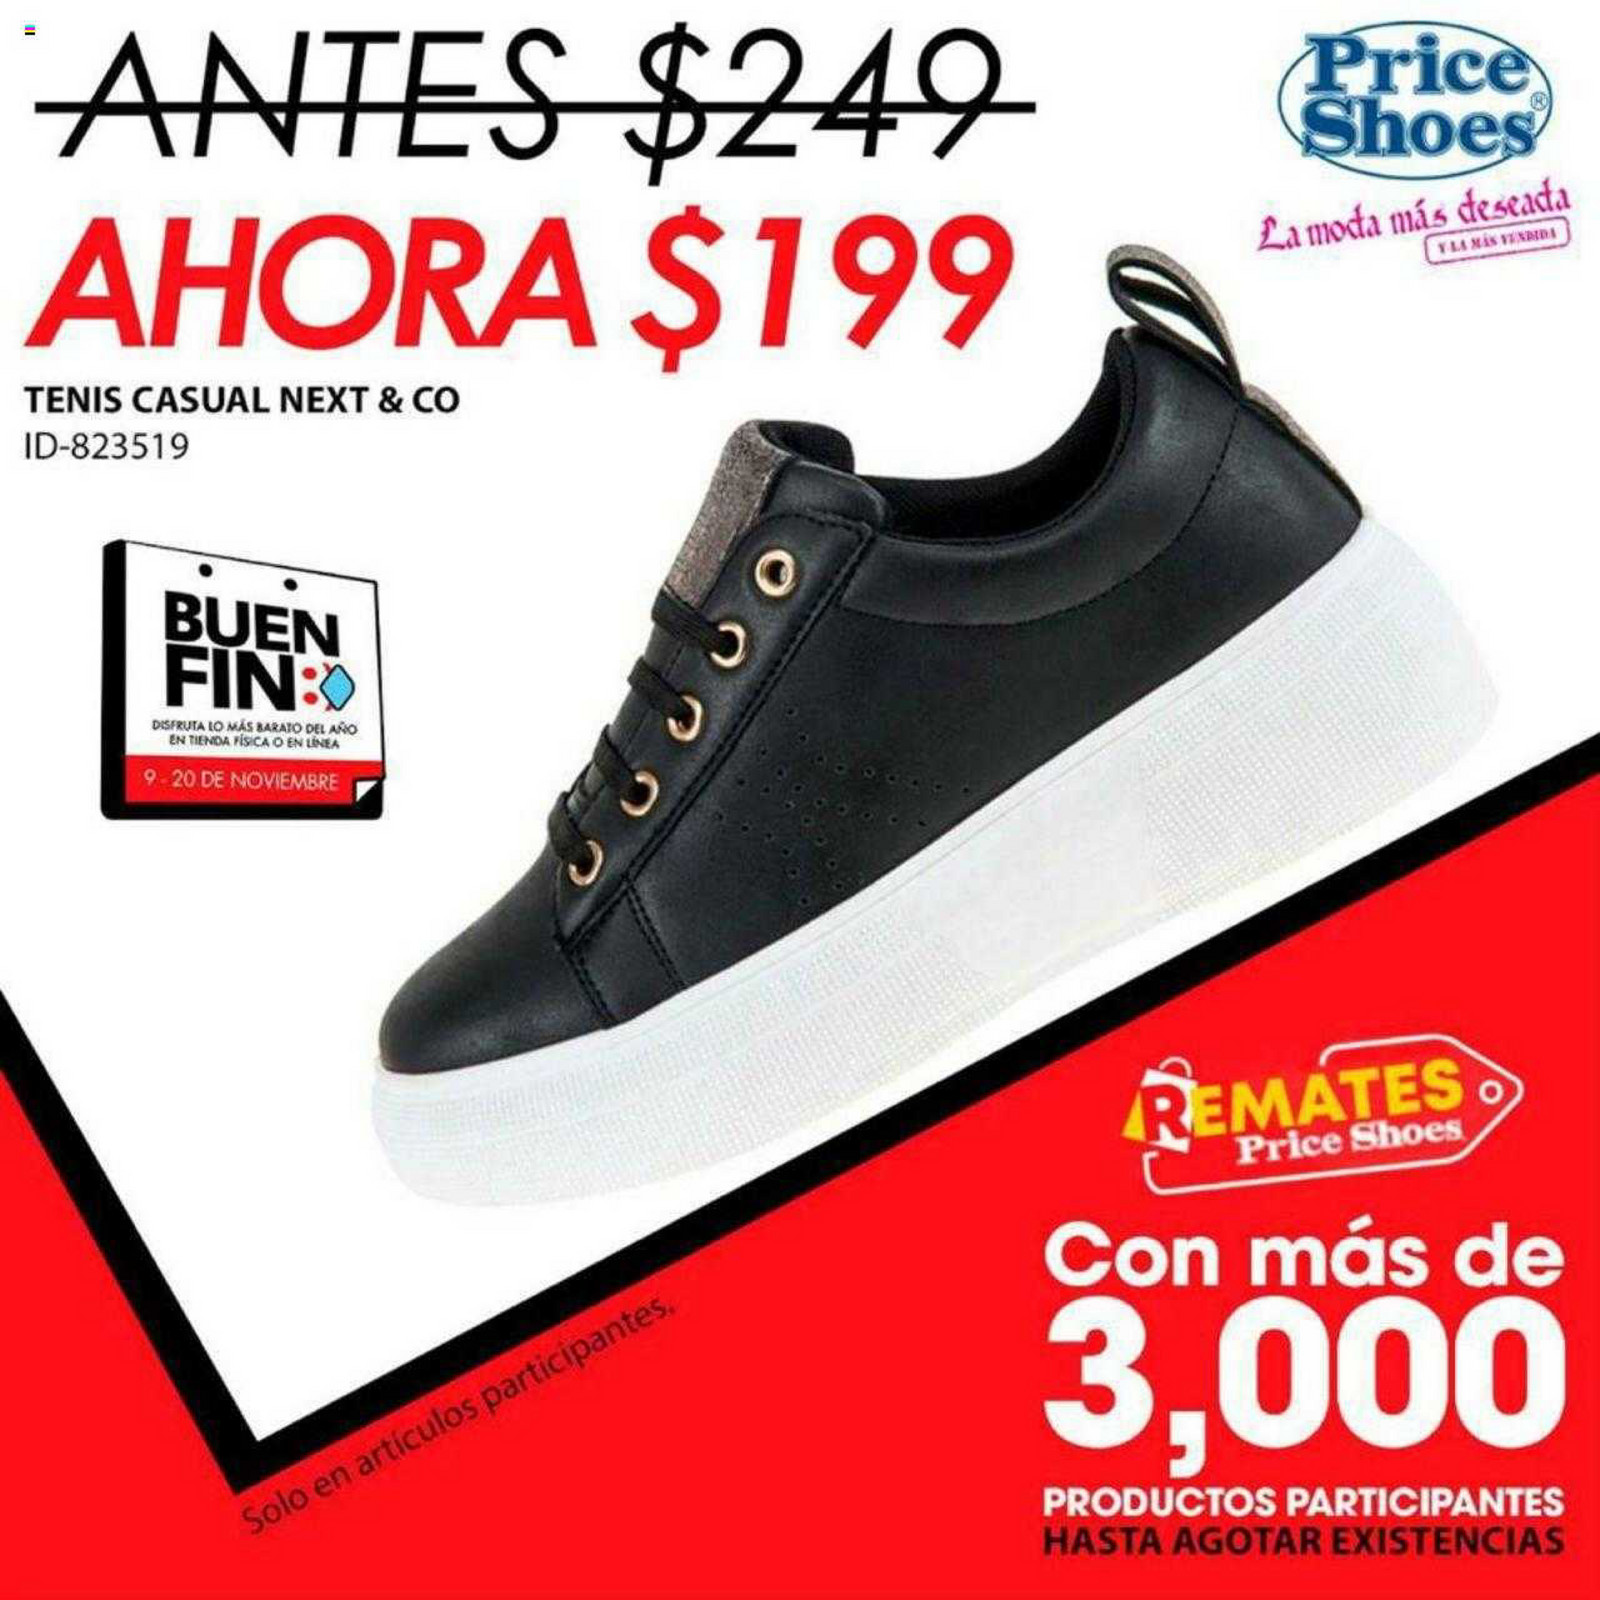 zapatos - price shoes - Página 1 - Created with Publitas.com